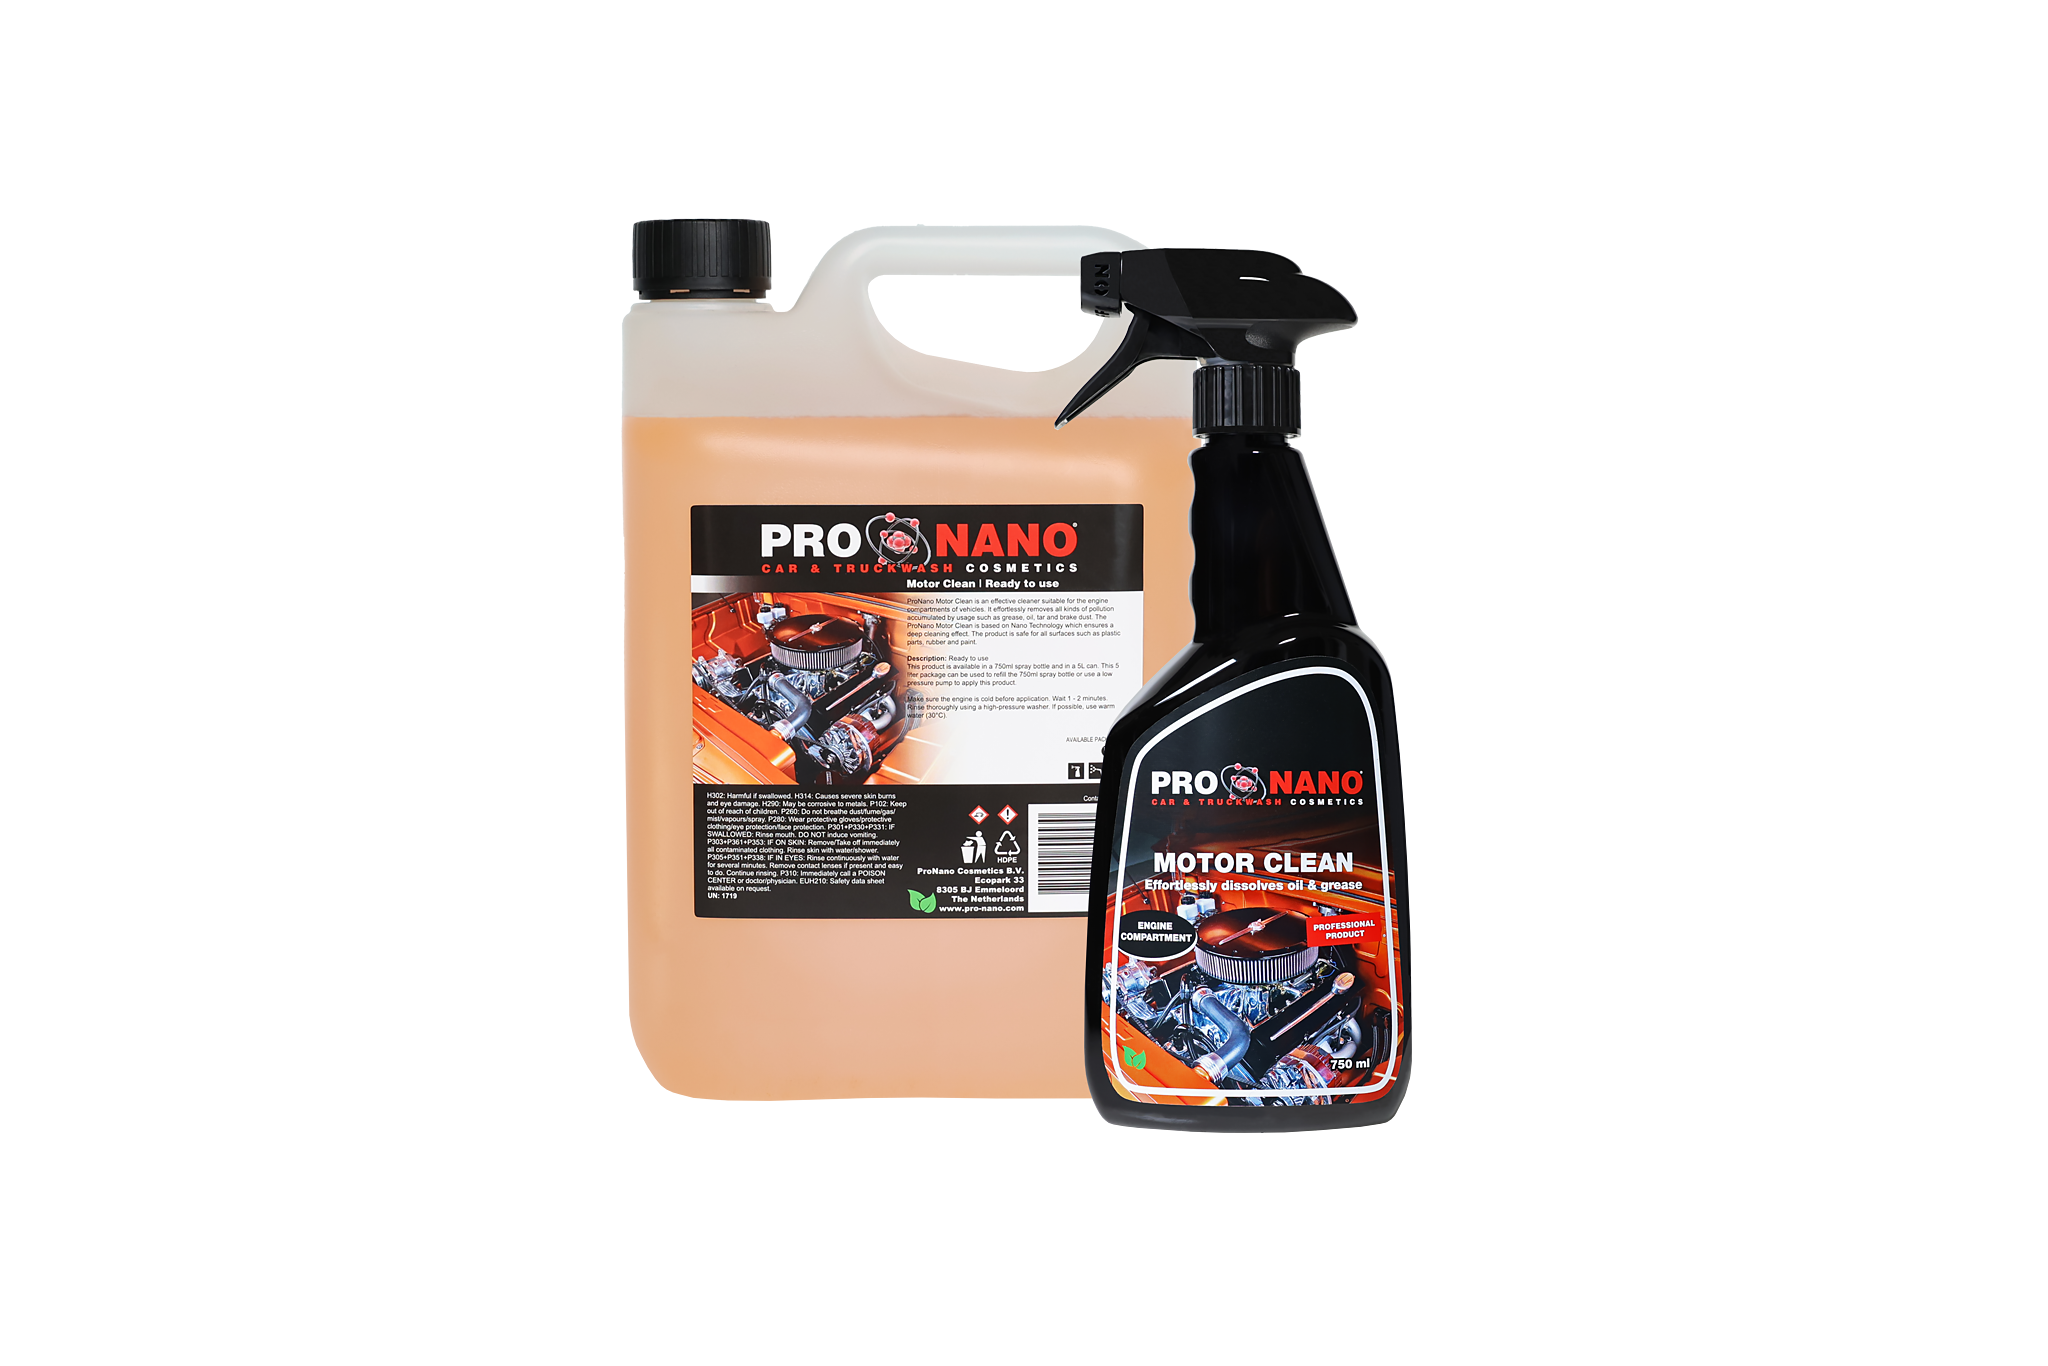 Reinigen Sie den Motorraum Ihres Fahrzeugs? ProNano Motor Clean - ProNano